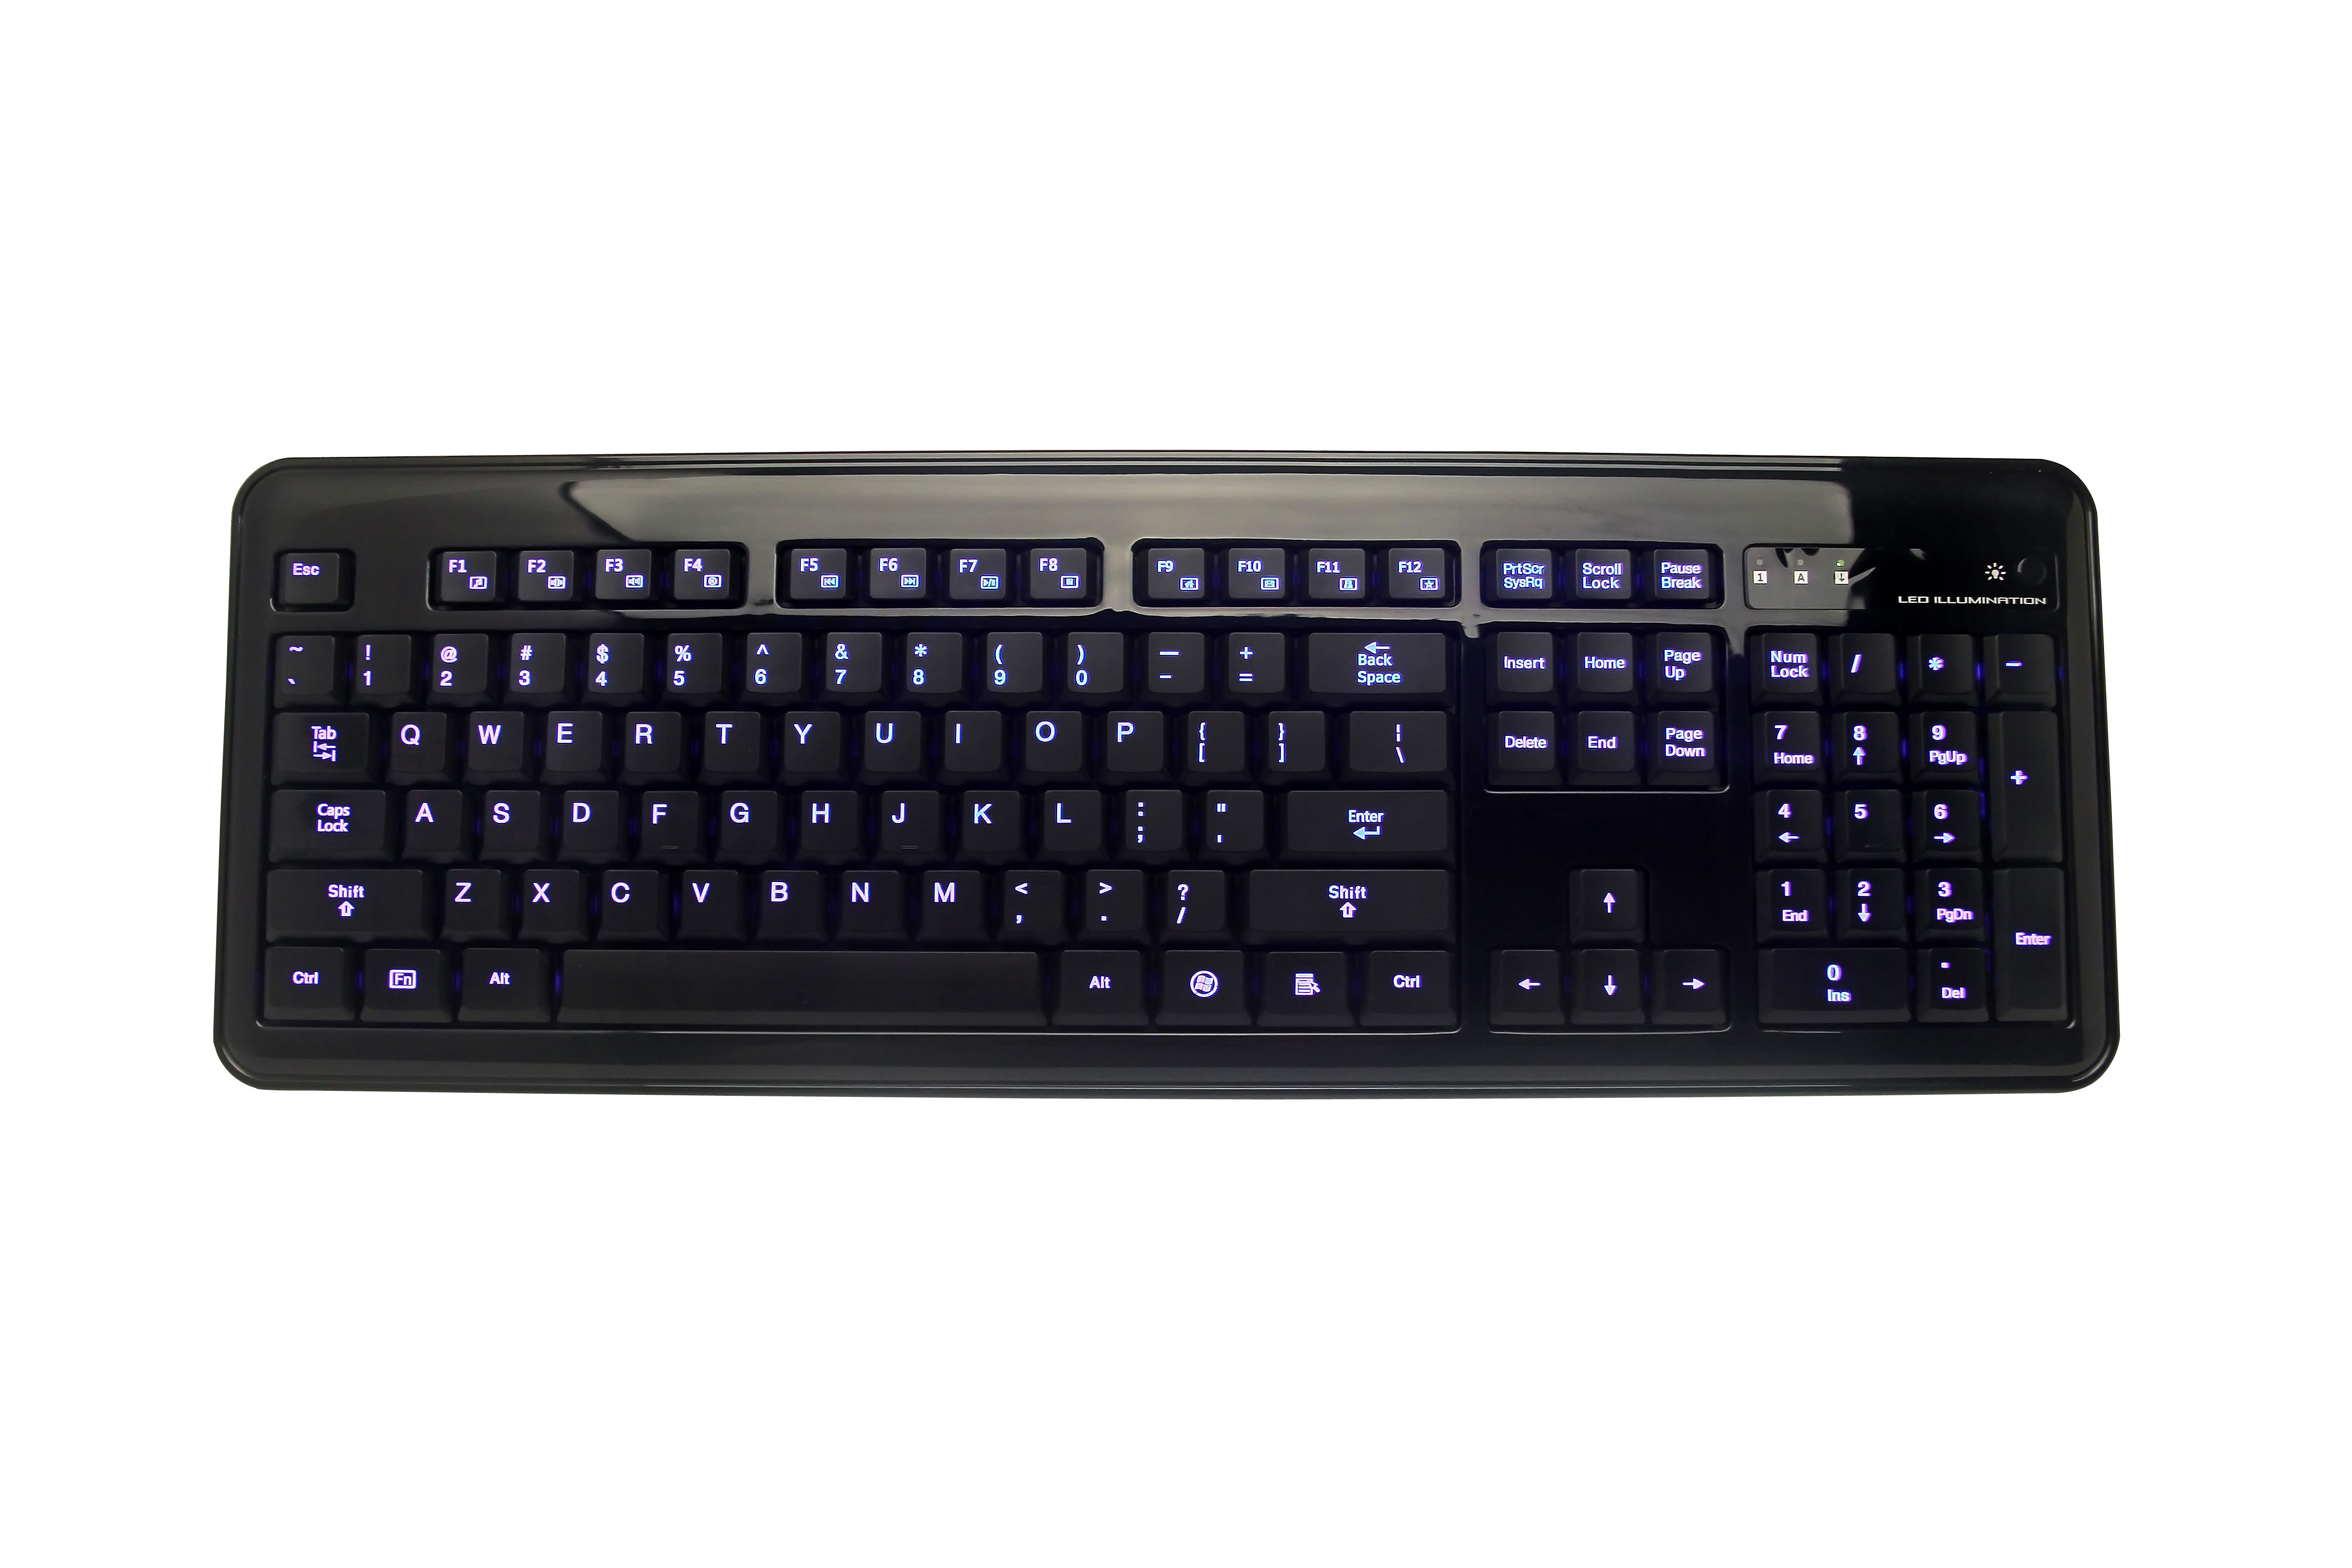 LED Illuminated Keyboard